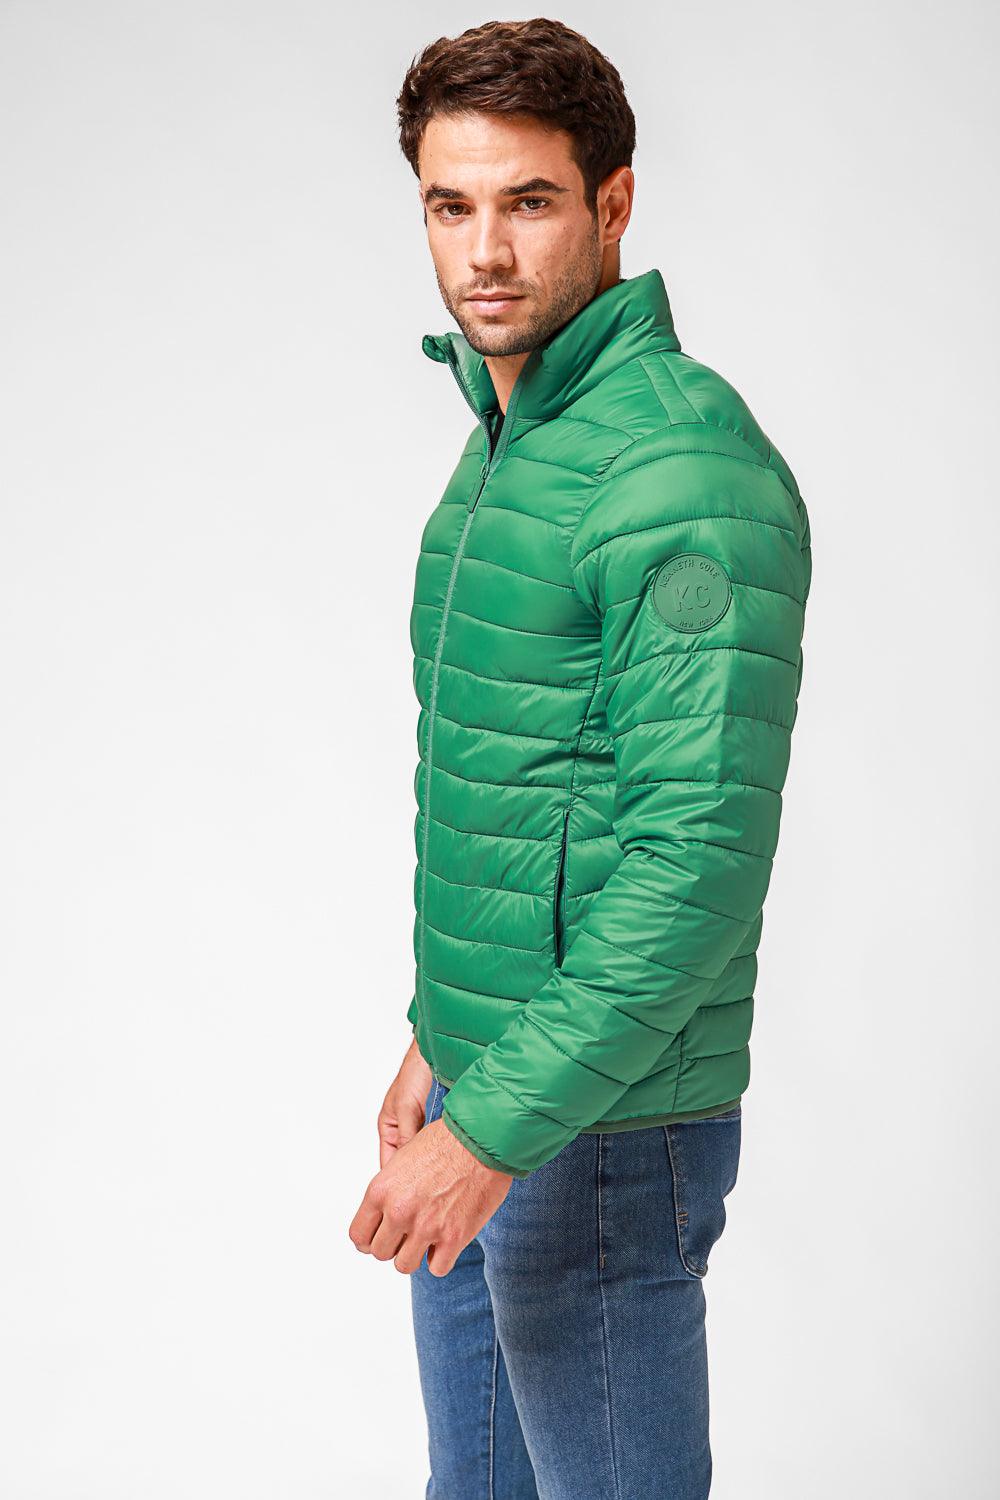 KENNETH COLE - מעיל פוף בצבע ירוק - MASHBIR//365